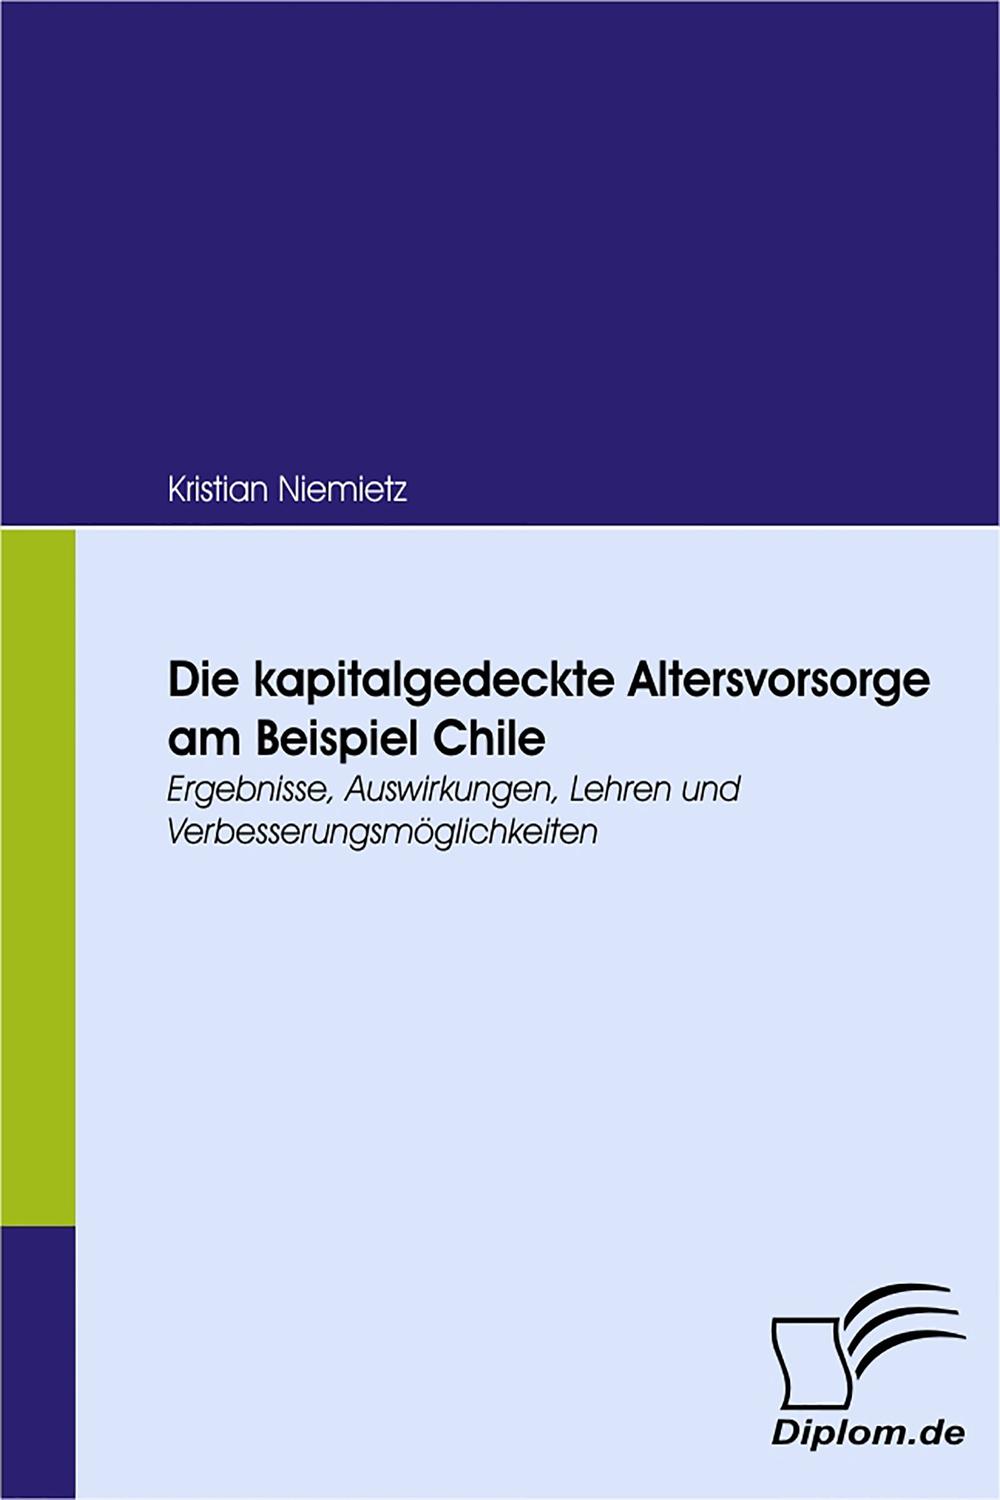 Die kapitalgedeckte Altersvorsorge am Beispiel Chile - Kristian Niemietz